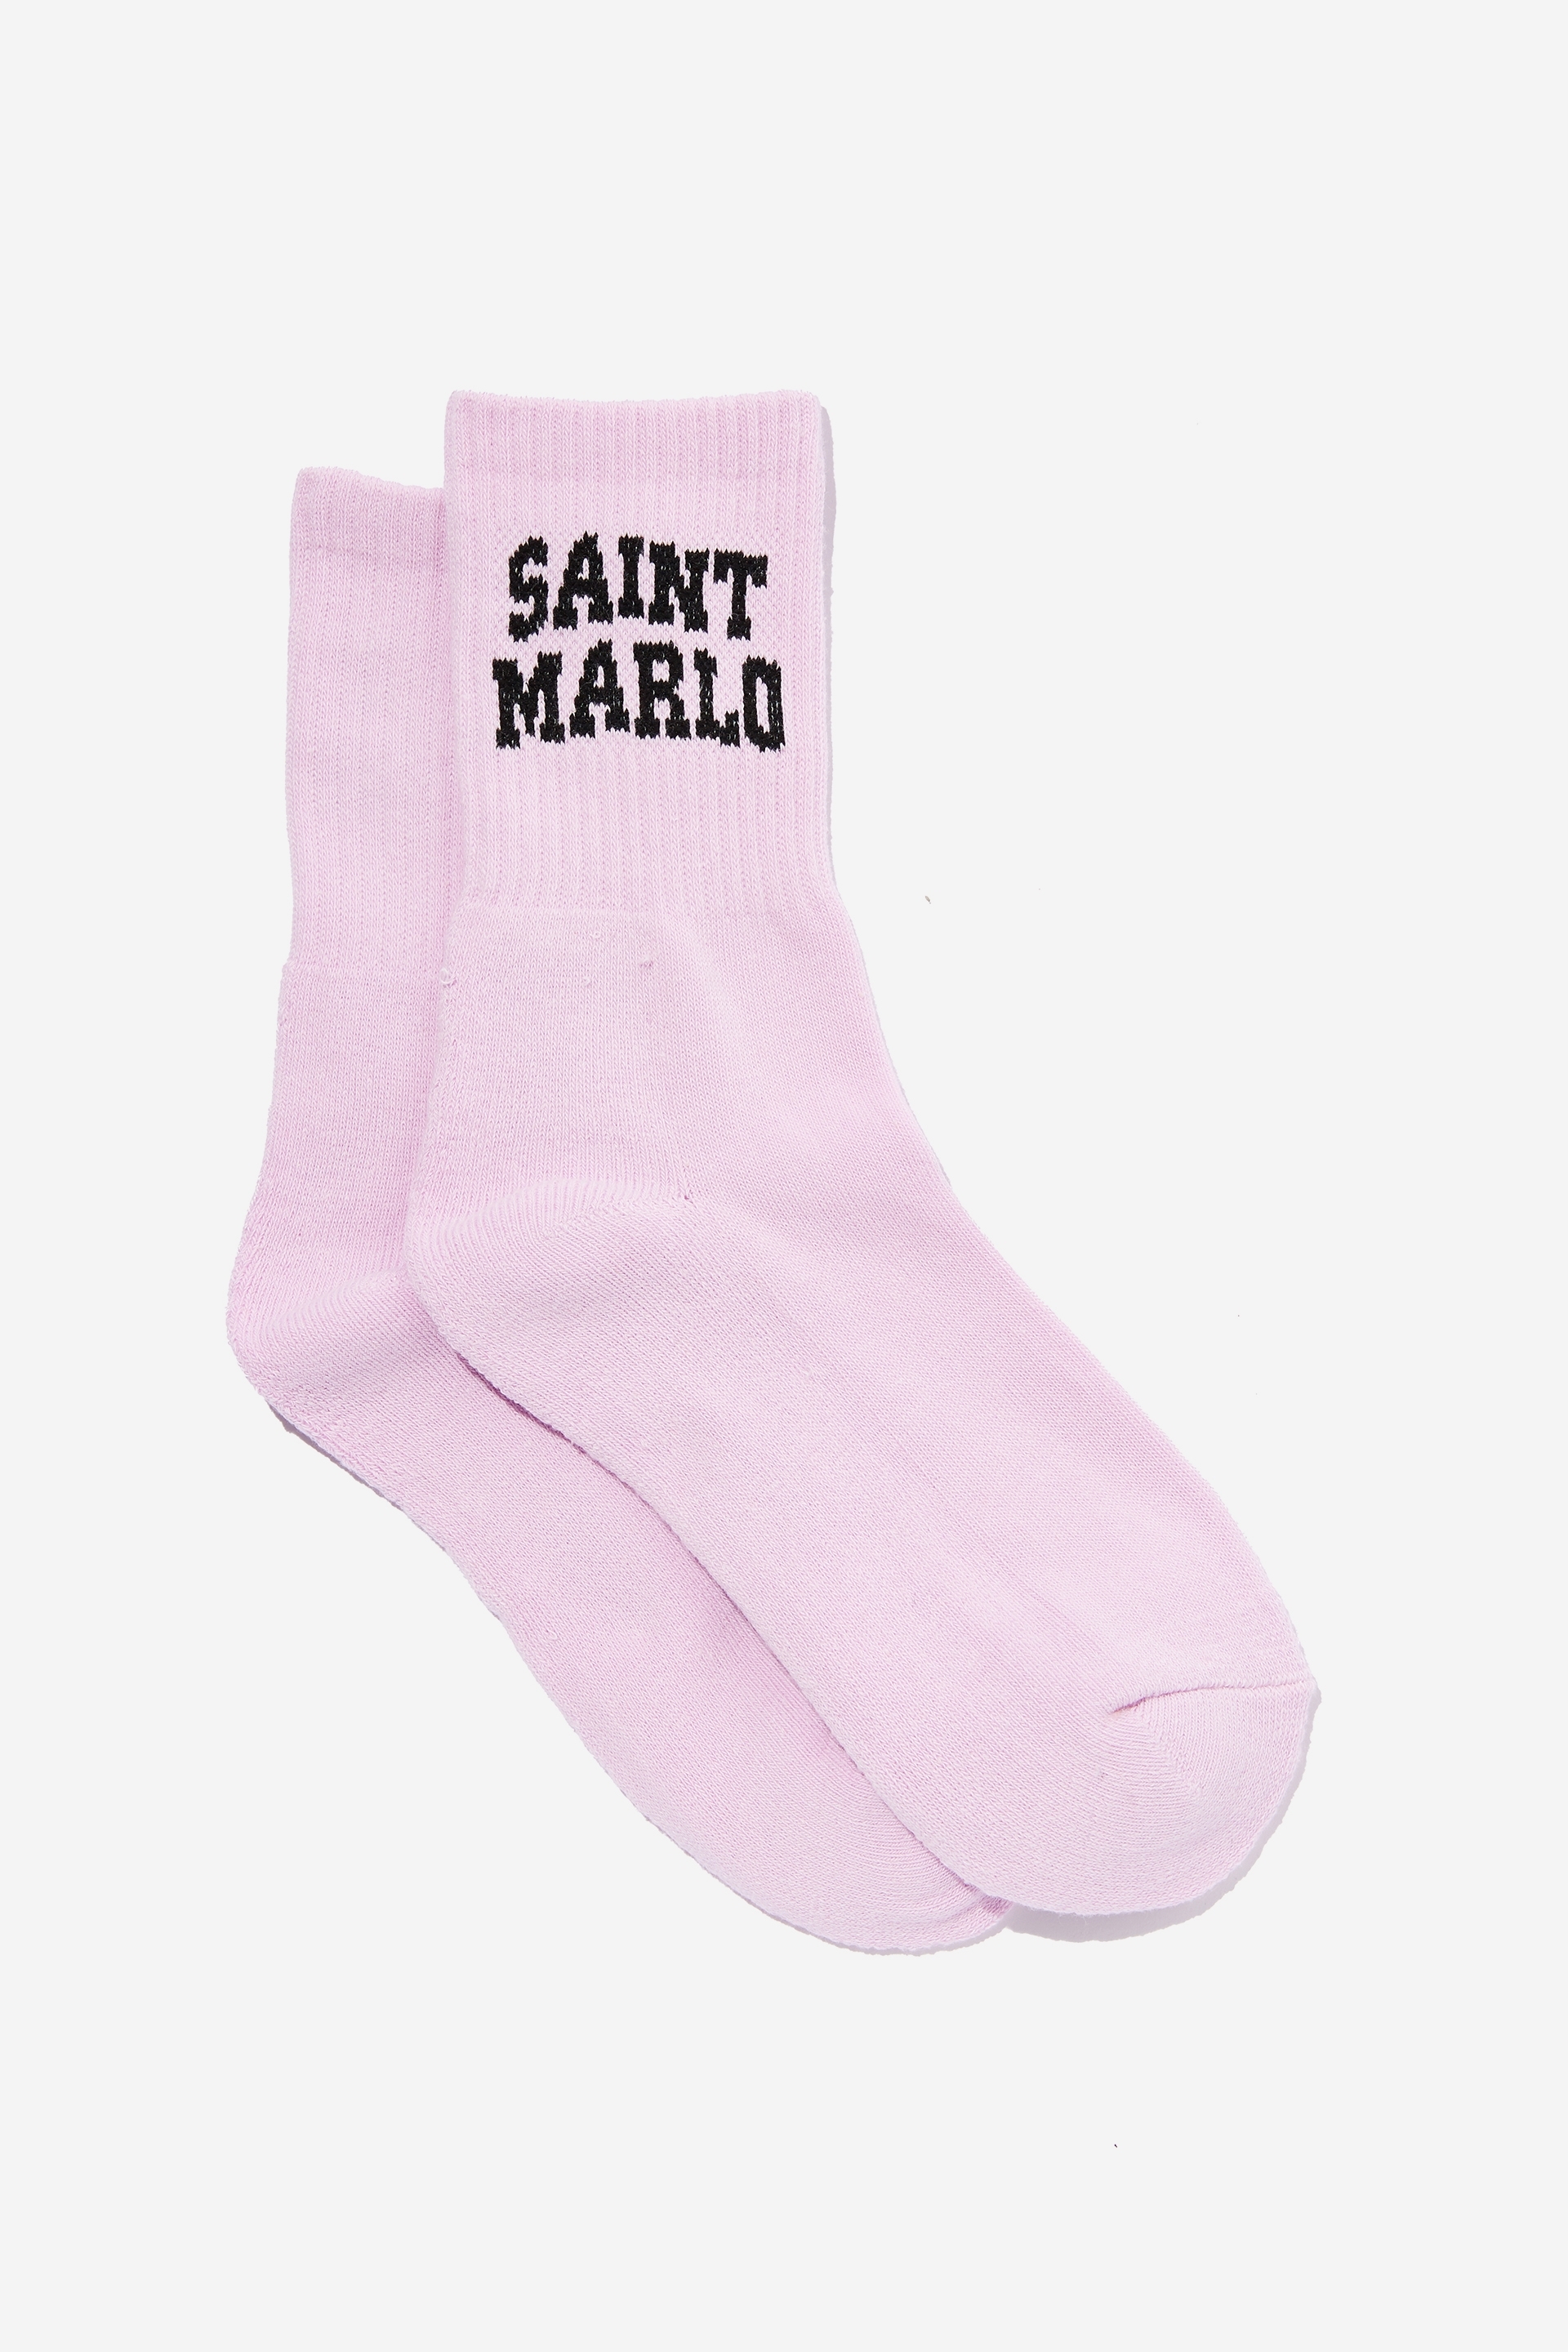 Factorie - Retro Sport Sock - Pale violet/saint marlo cali